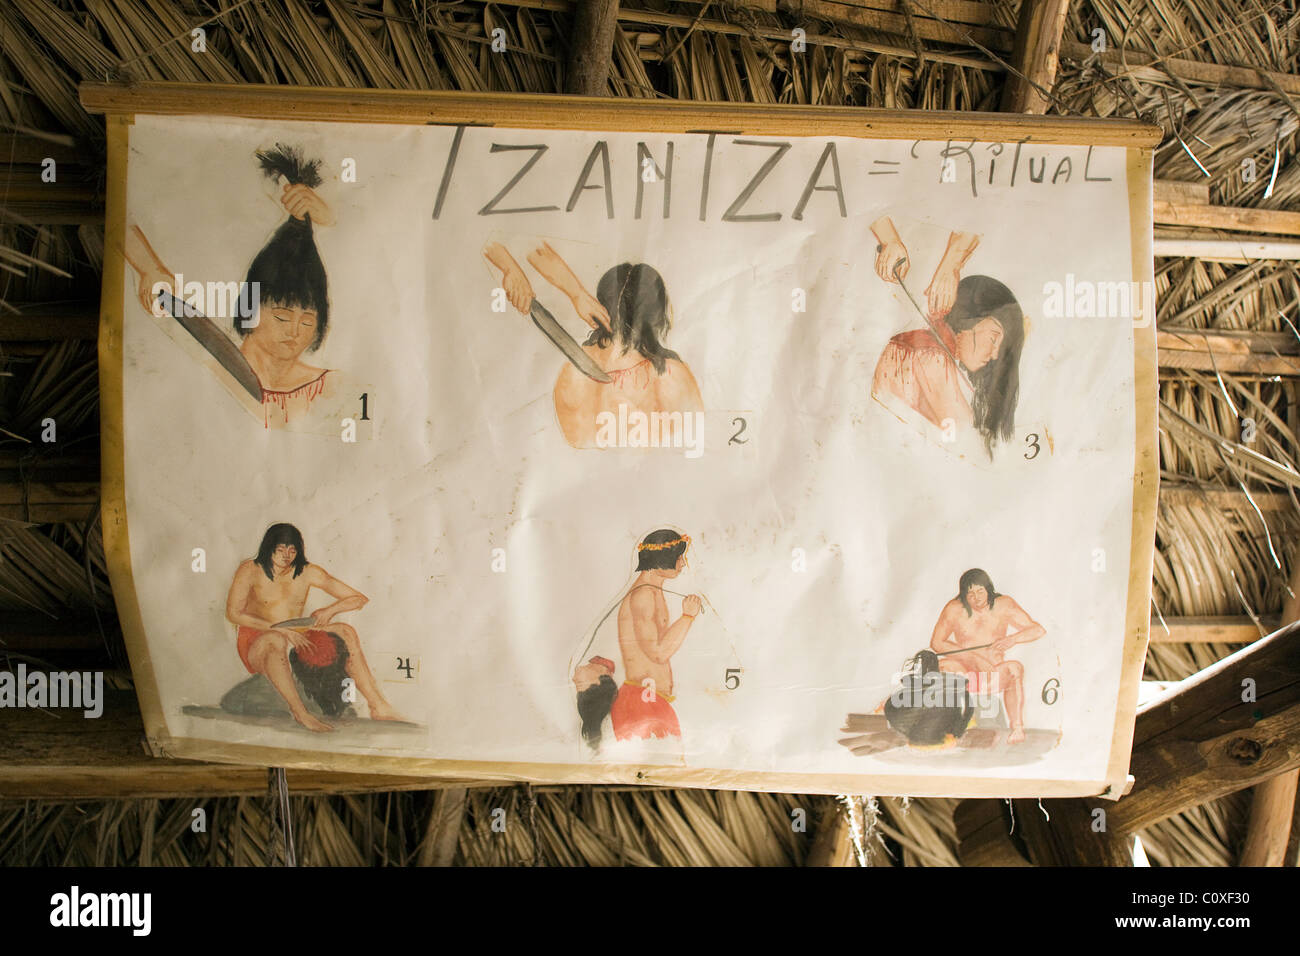 Tzantaza Ritual Sign - Museo Solar Inti Nan - near Quito, Ecuador Stock Photo